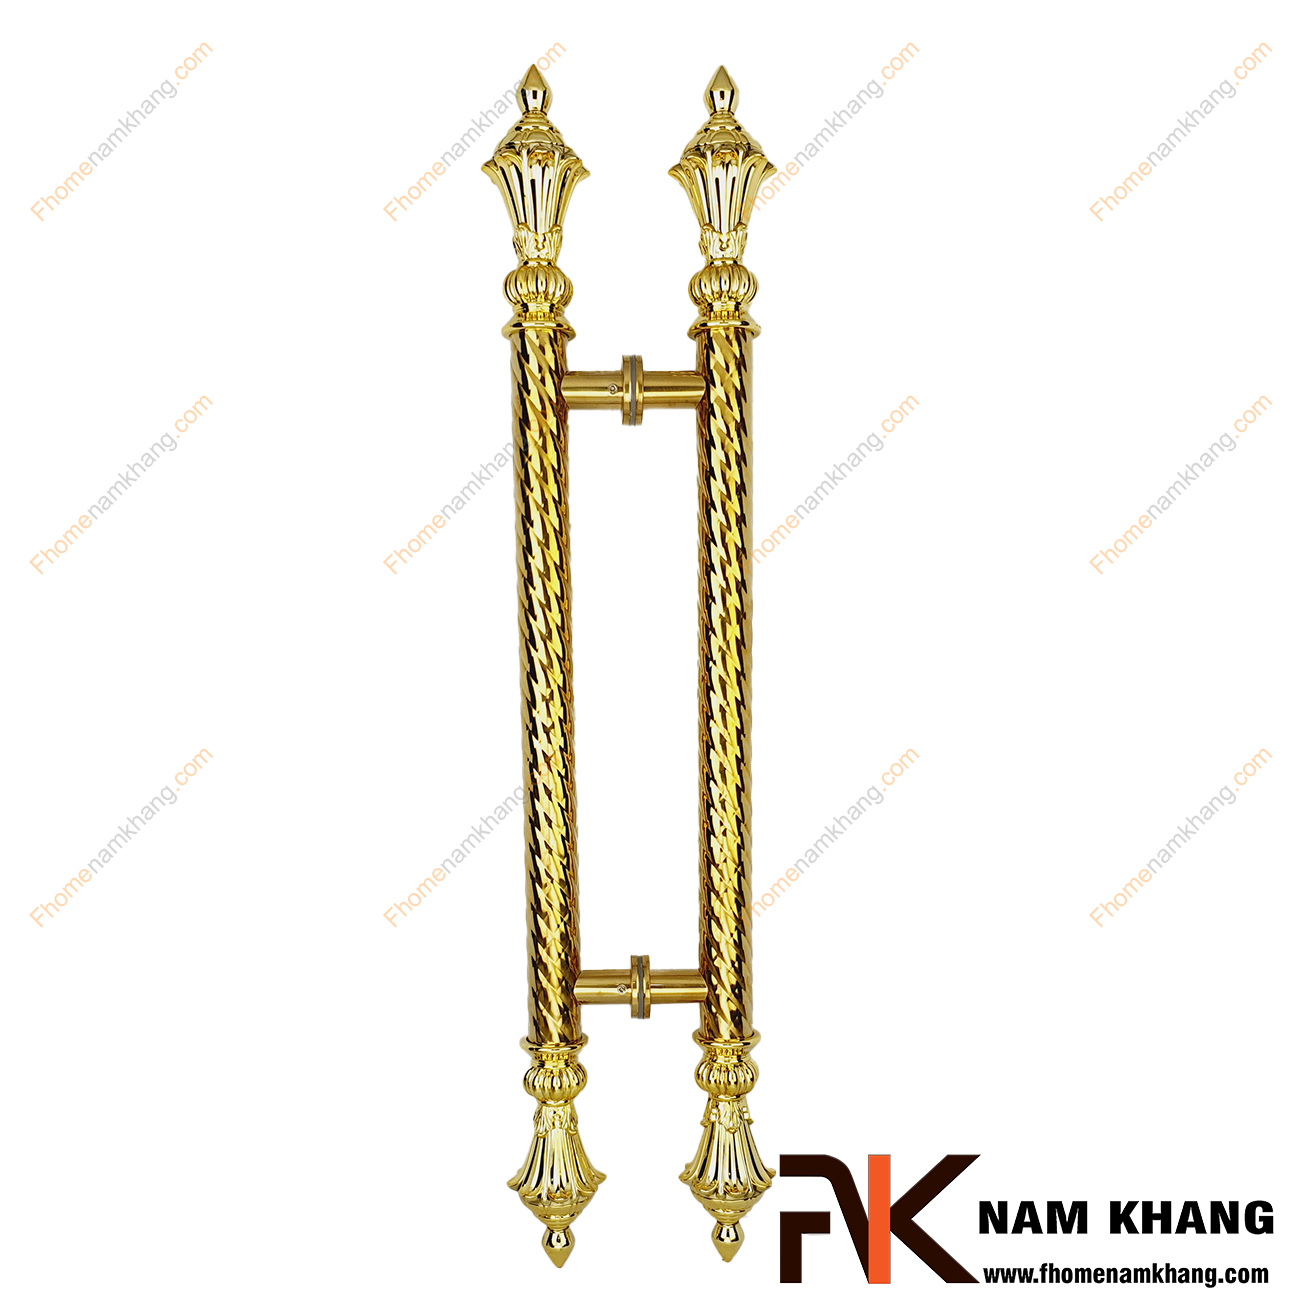 Tay nắm cửa chính bằng inox màu vàng gold NKC021-V là sản phẩm tay nắm đồng tâm dùng cho nhiều loại cửa với đầy đủ các chất liệu theo thiết kế nội thất.